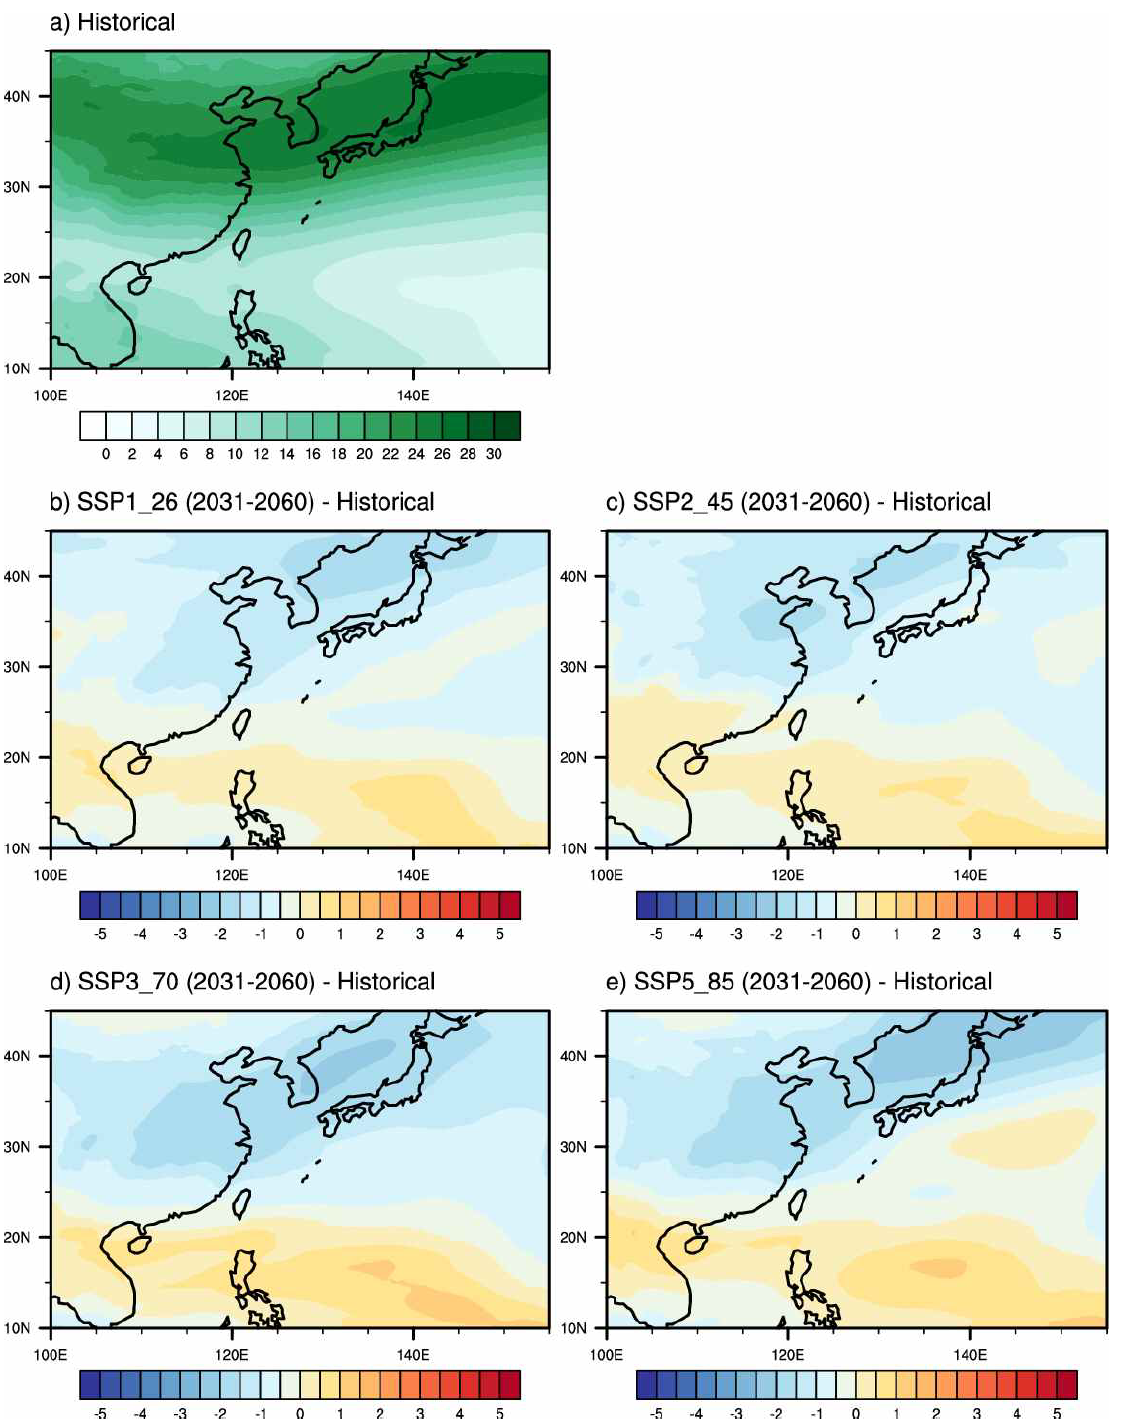 (수식)Vertical wind shear (m s- ) from June to November for (a) climatological mean for historical run (1985-2014) and differences between (b) SSP1_26, (c) SSP2_45, (d) SSP3_70, and (e) SSP5_85 scenarios (2031-2060) and historical run